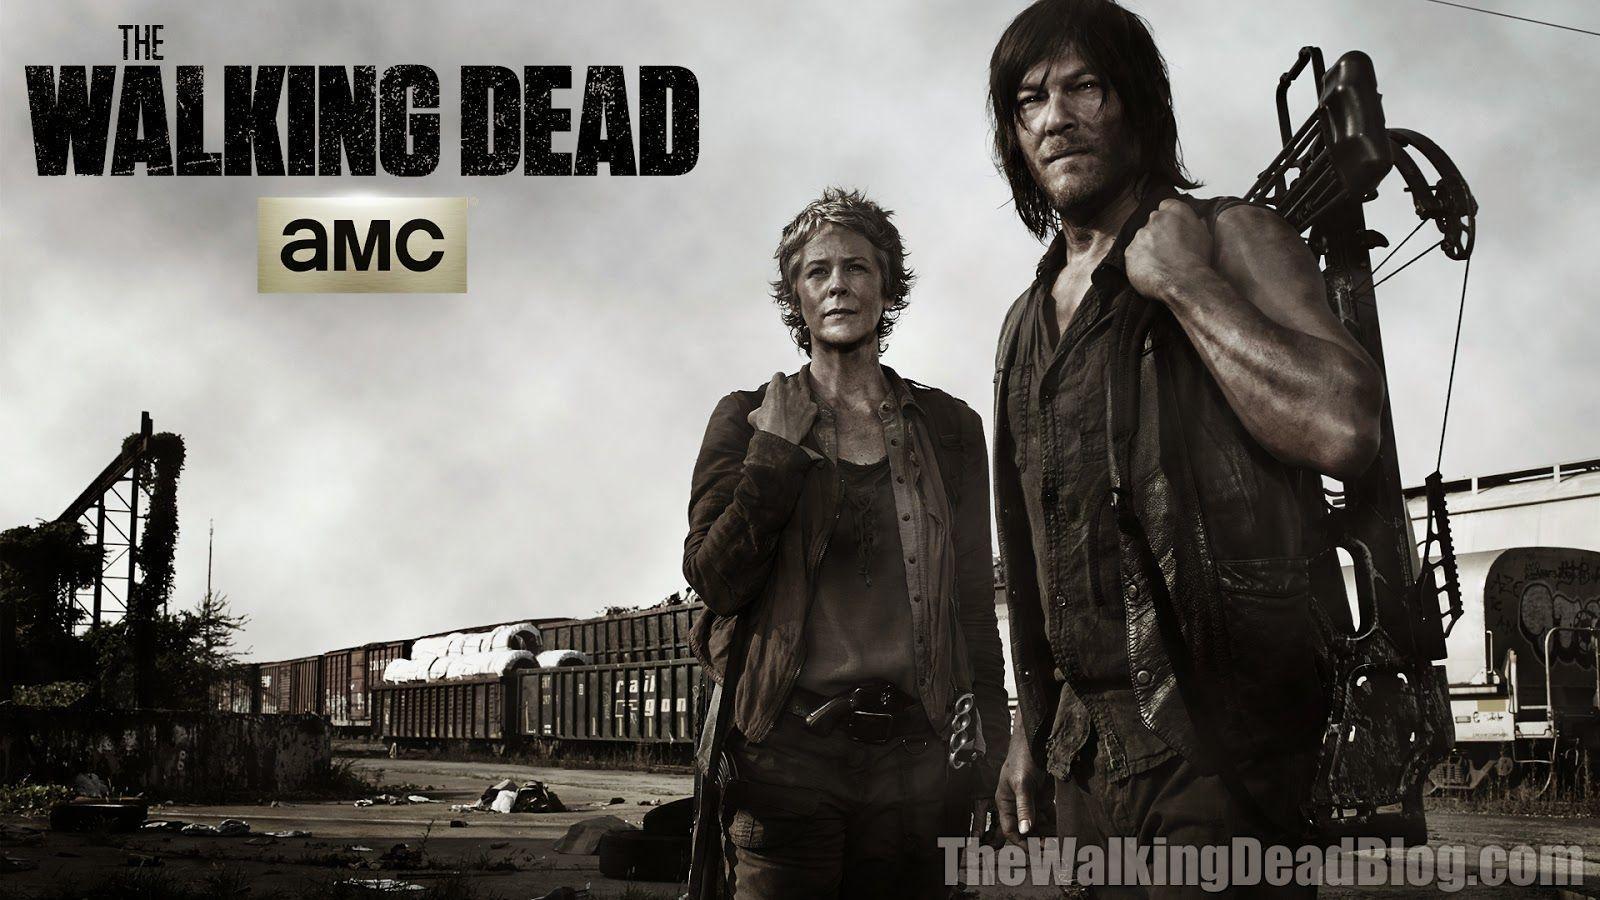 The Walking Dead Blog: New Walking Dead Season 5 Wallpaper